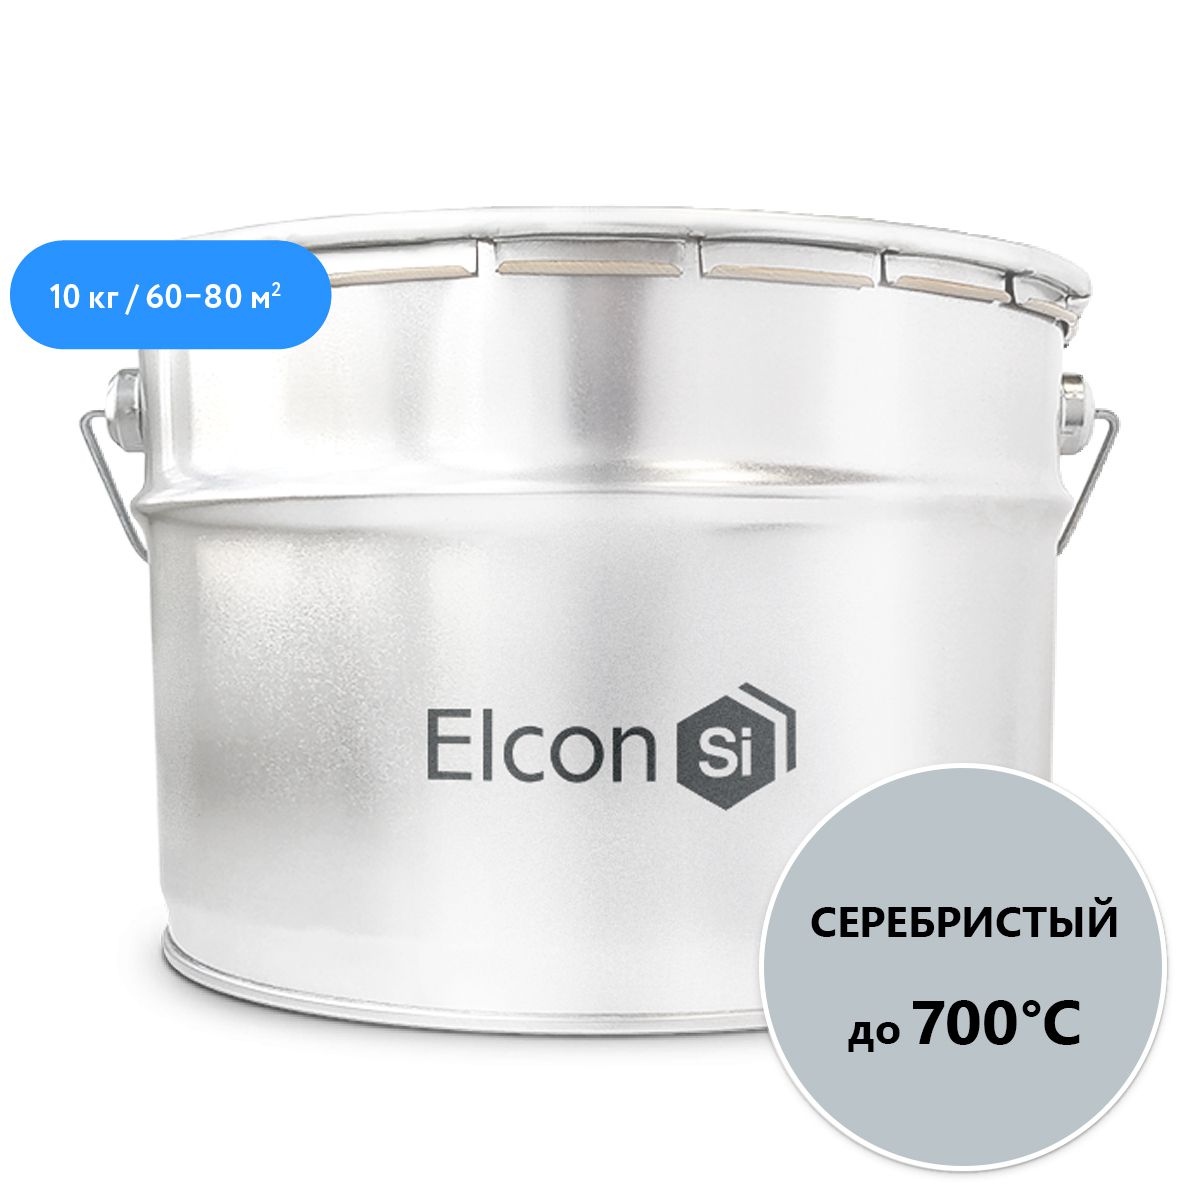 Эмаль Elcon термостойкая, до 700°С, серебристая, 10 кг